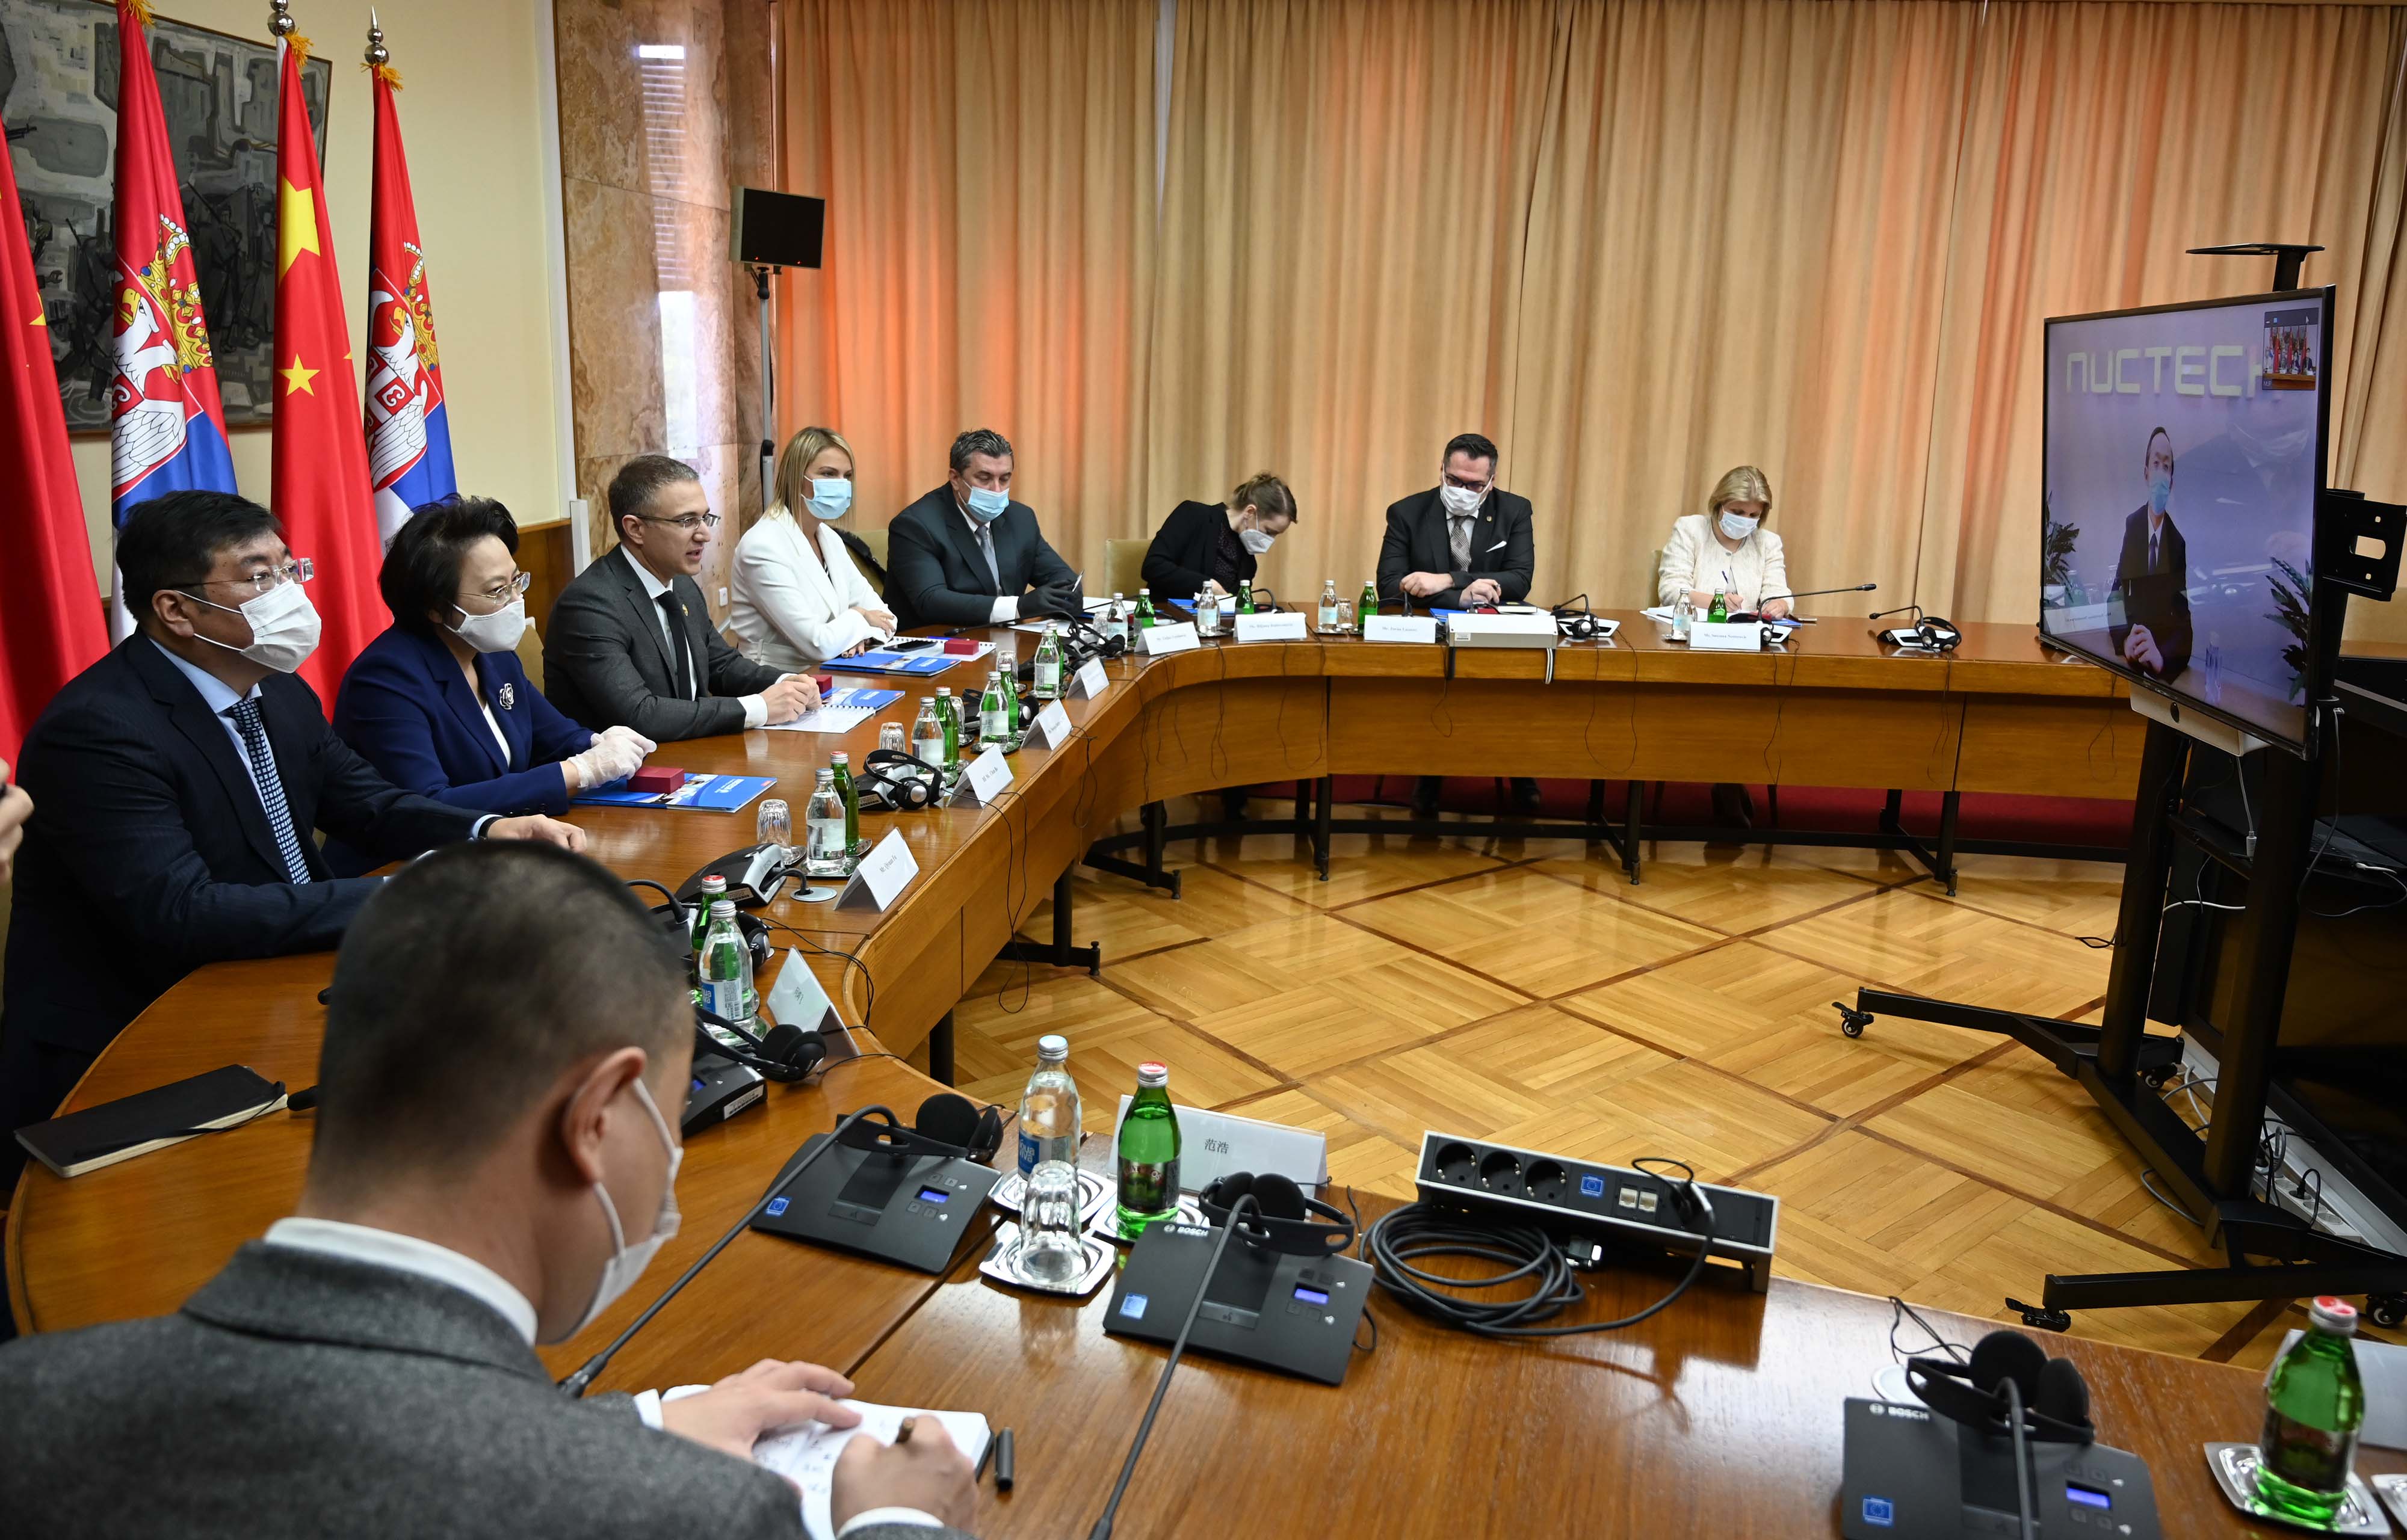 Ministar Stefanović prisustvovao primopredaji  zaštitne opreme i uređaja, koje je kineska kompanija „NUKTEK“ donirala MUP-u